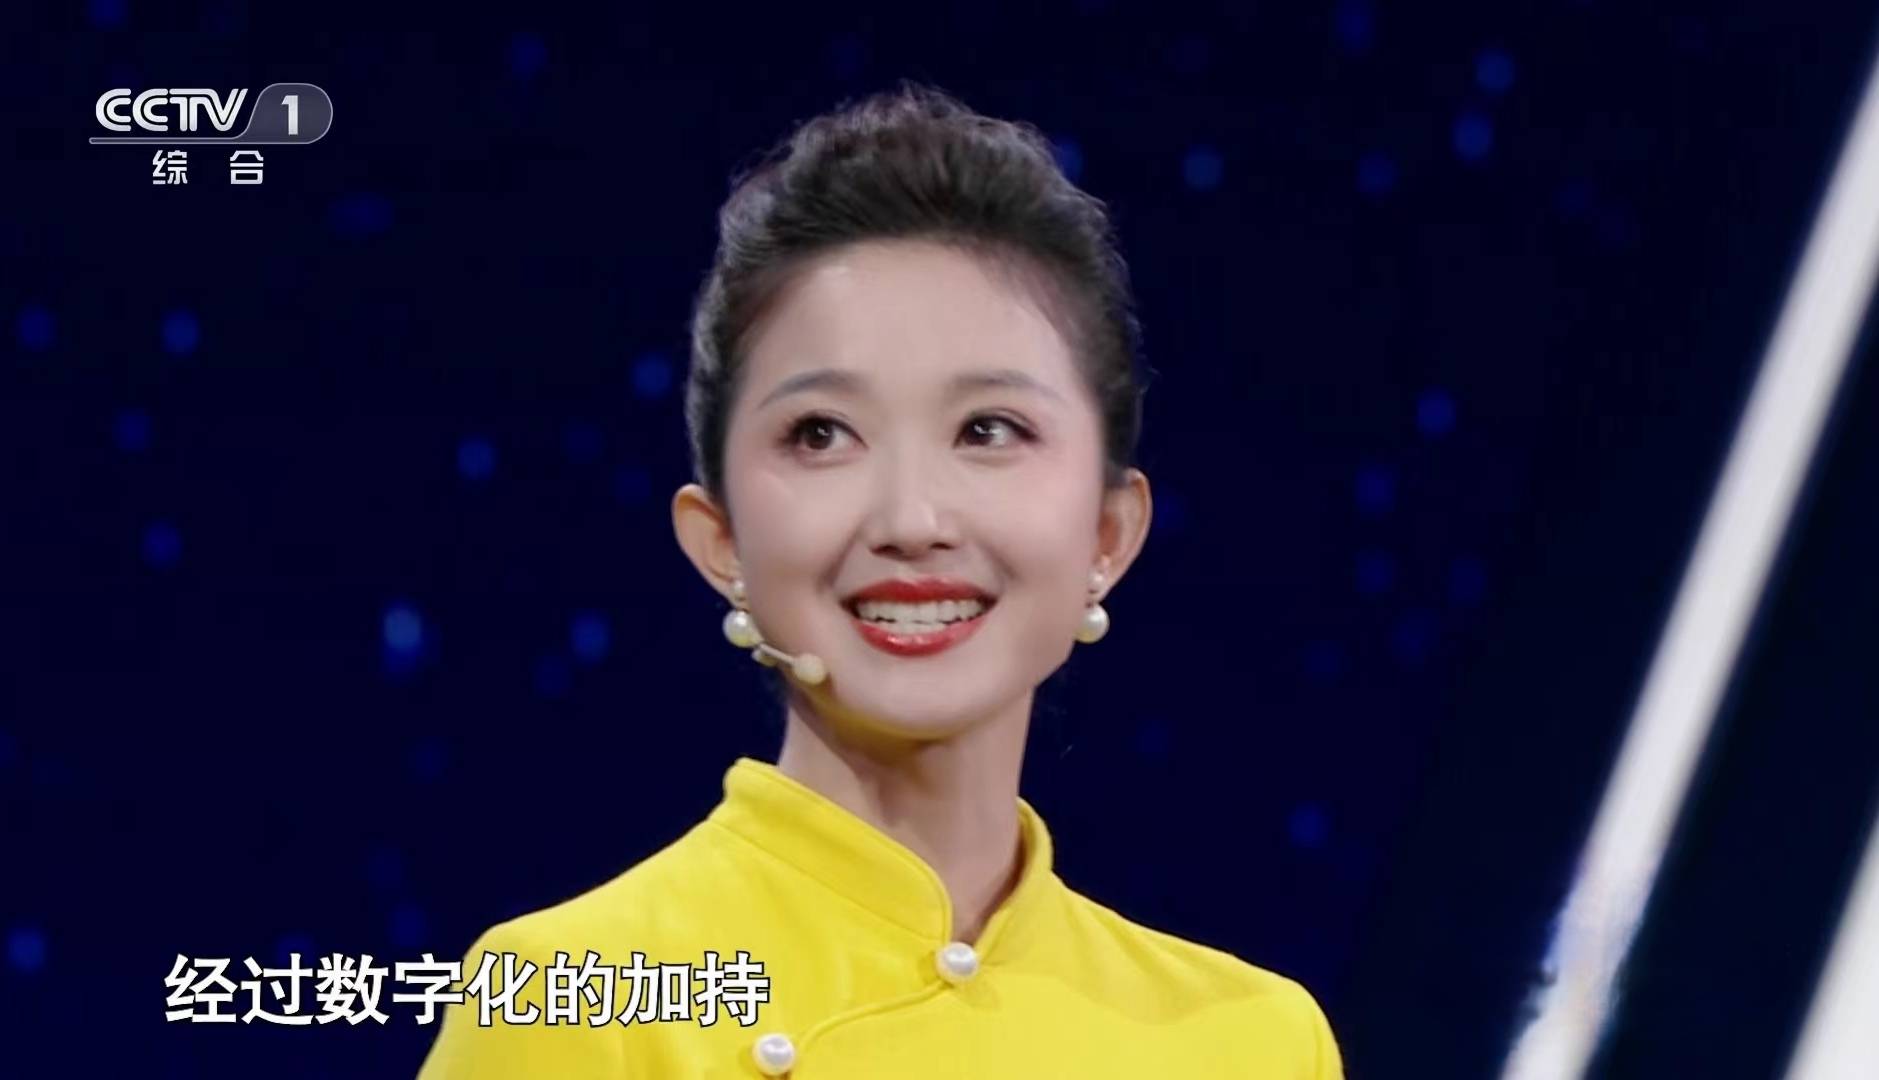 央视主持人大赛:辽宁台36岁的美女刘心悦,3次登场都是最高分,她赢在哪